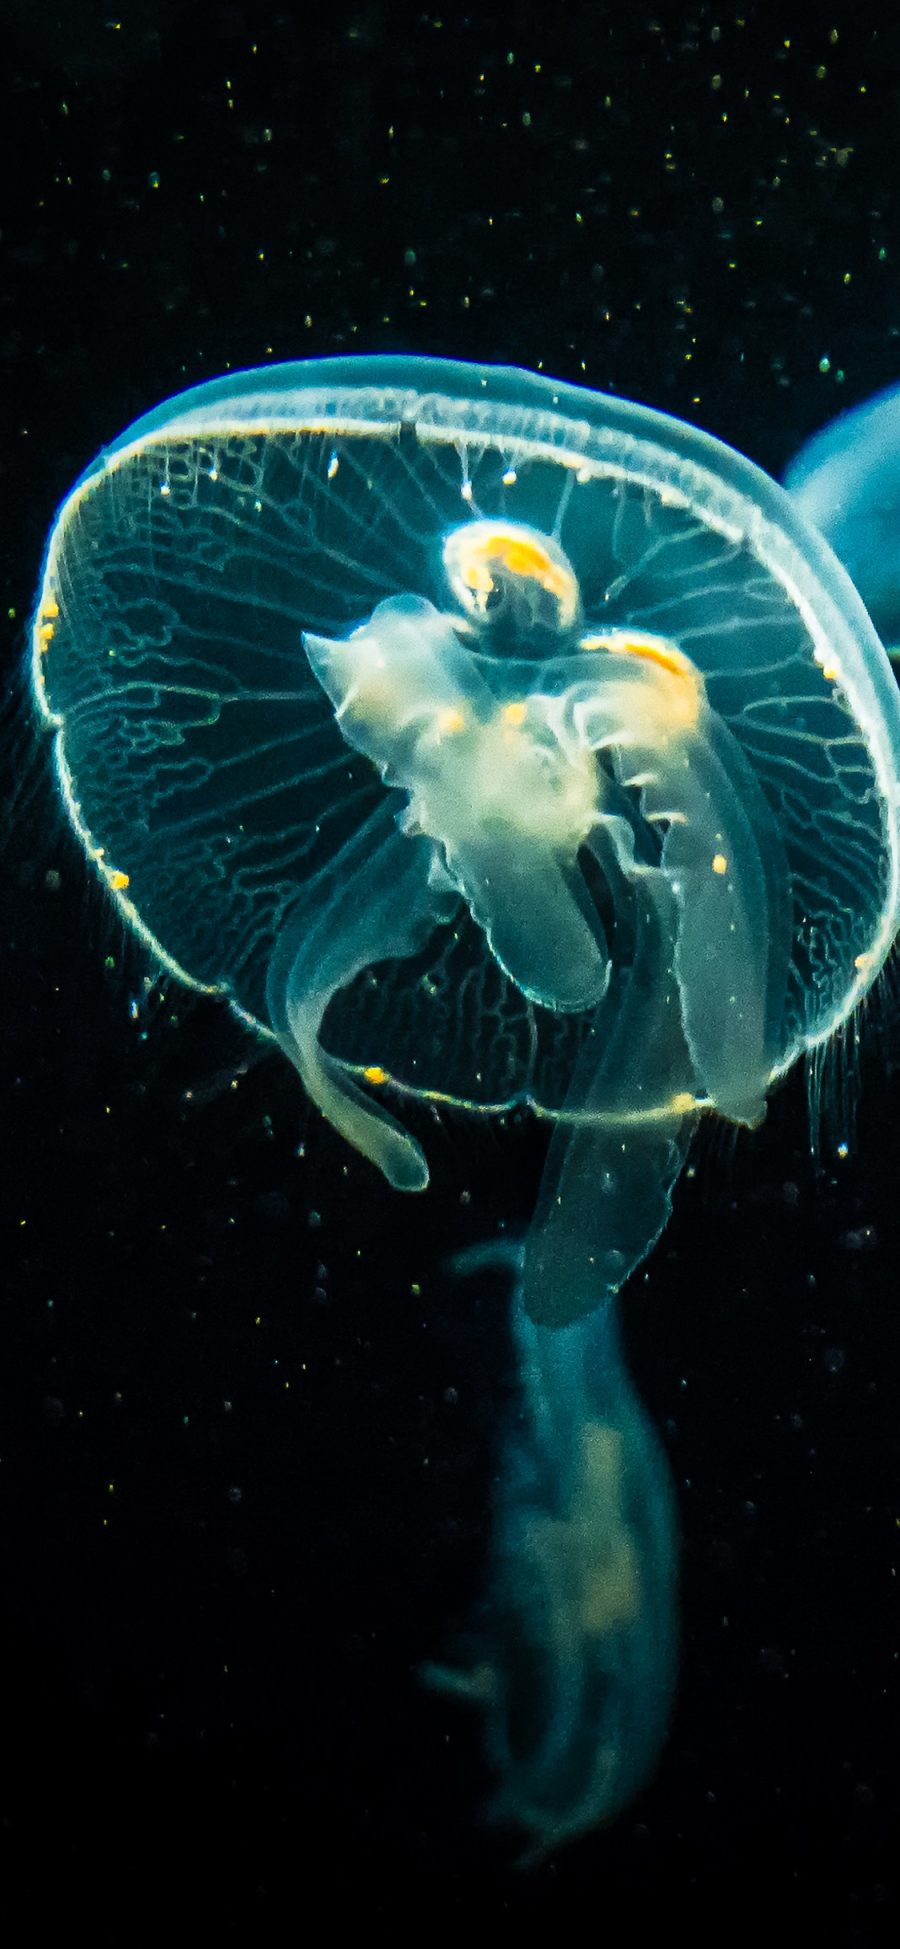 [2436×1125]水母 海洋生物 浮游 伞状 苹果手机壁纸图片